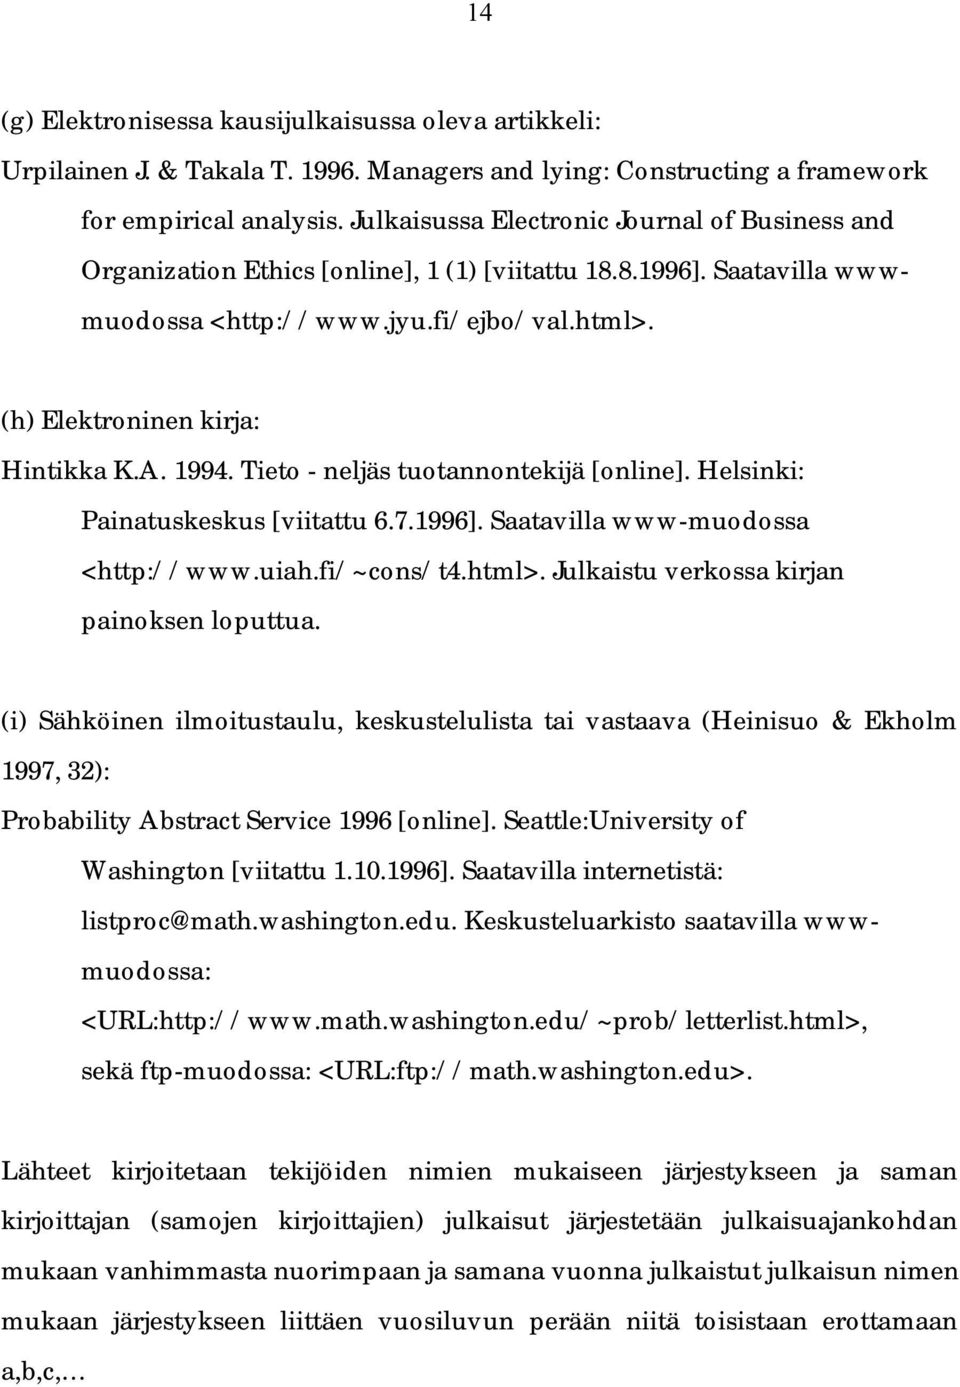 1994. Tieto - neljäs tuotannontekijä [online]. Helsinki: Painatuskeskus [viitattu 6.7.1996]. Saatavilla www-muodossa <http://www.uiah.fi/~cons/t4.html>. Julkaistu verkossa kirjan painoksen loputtua.